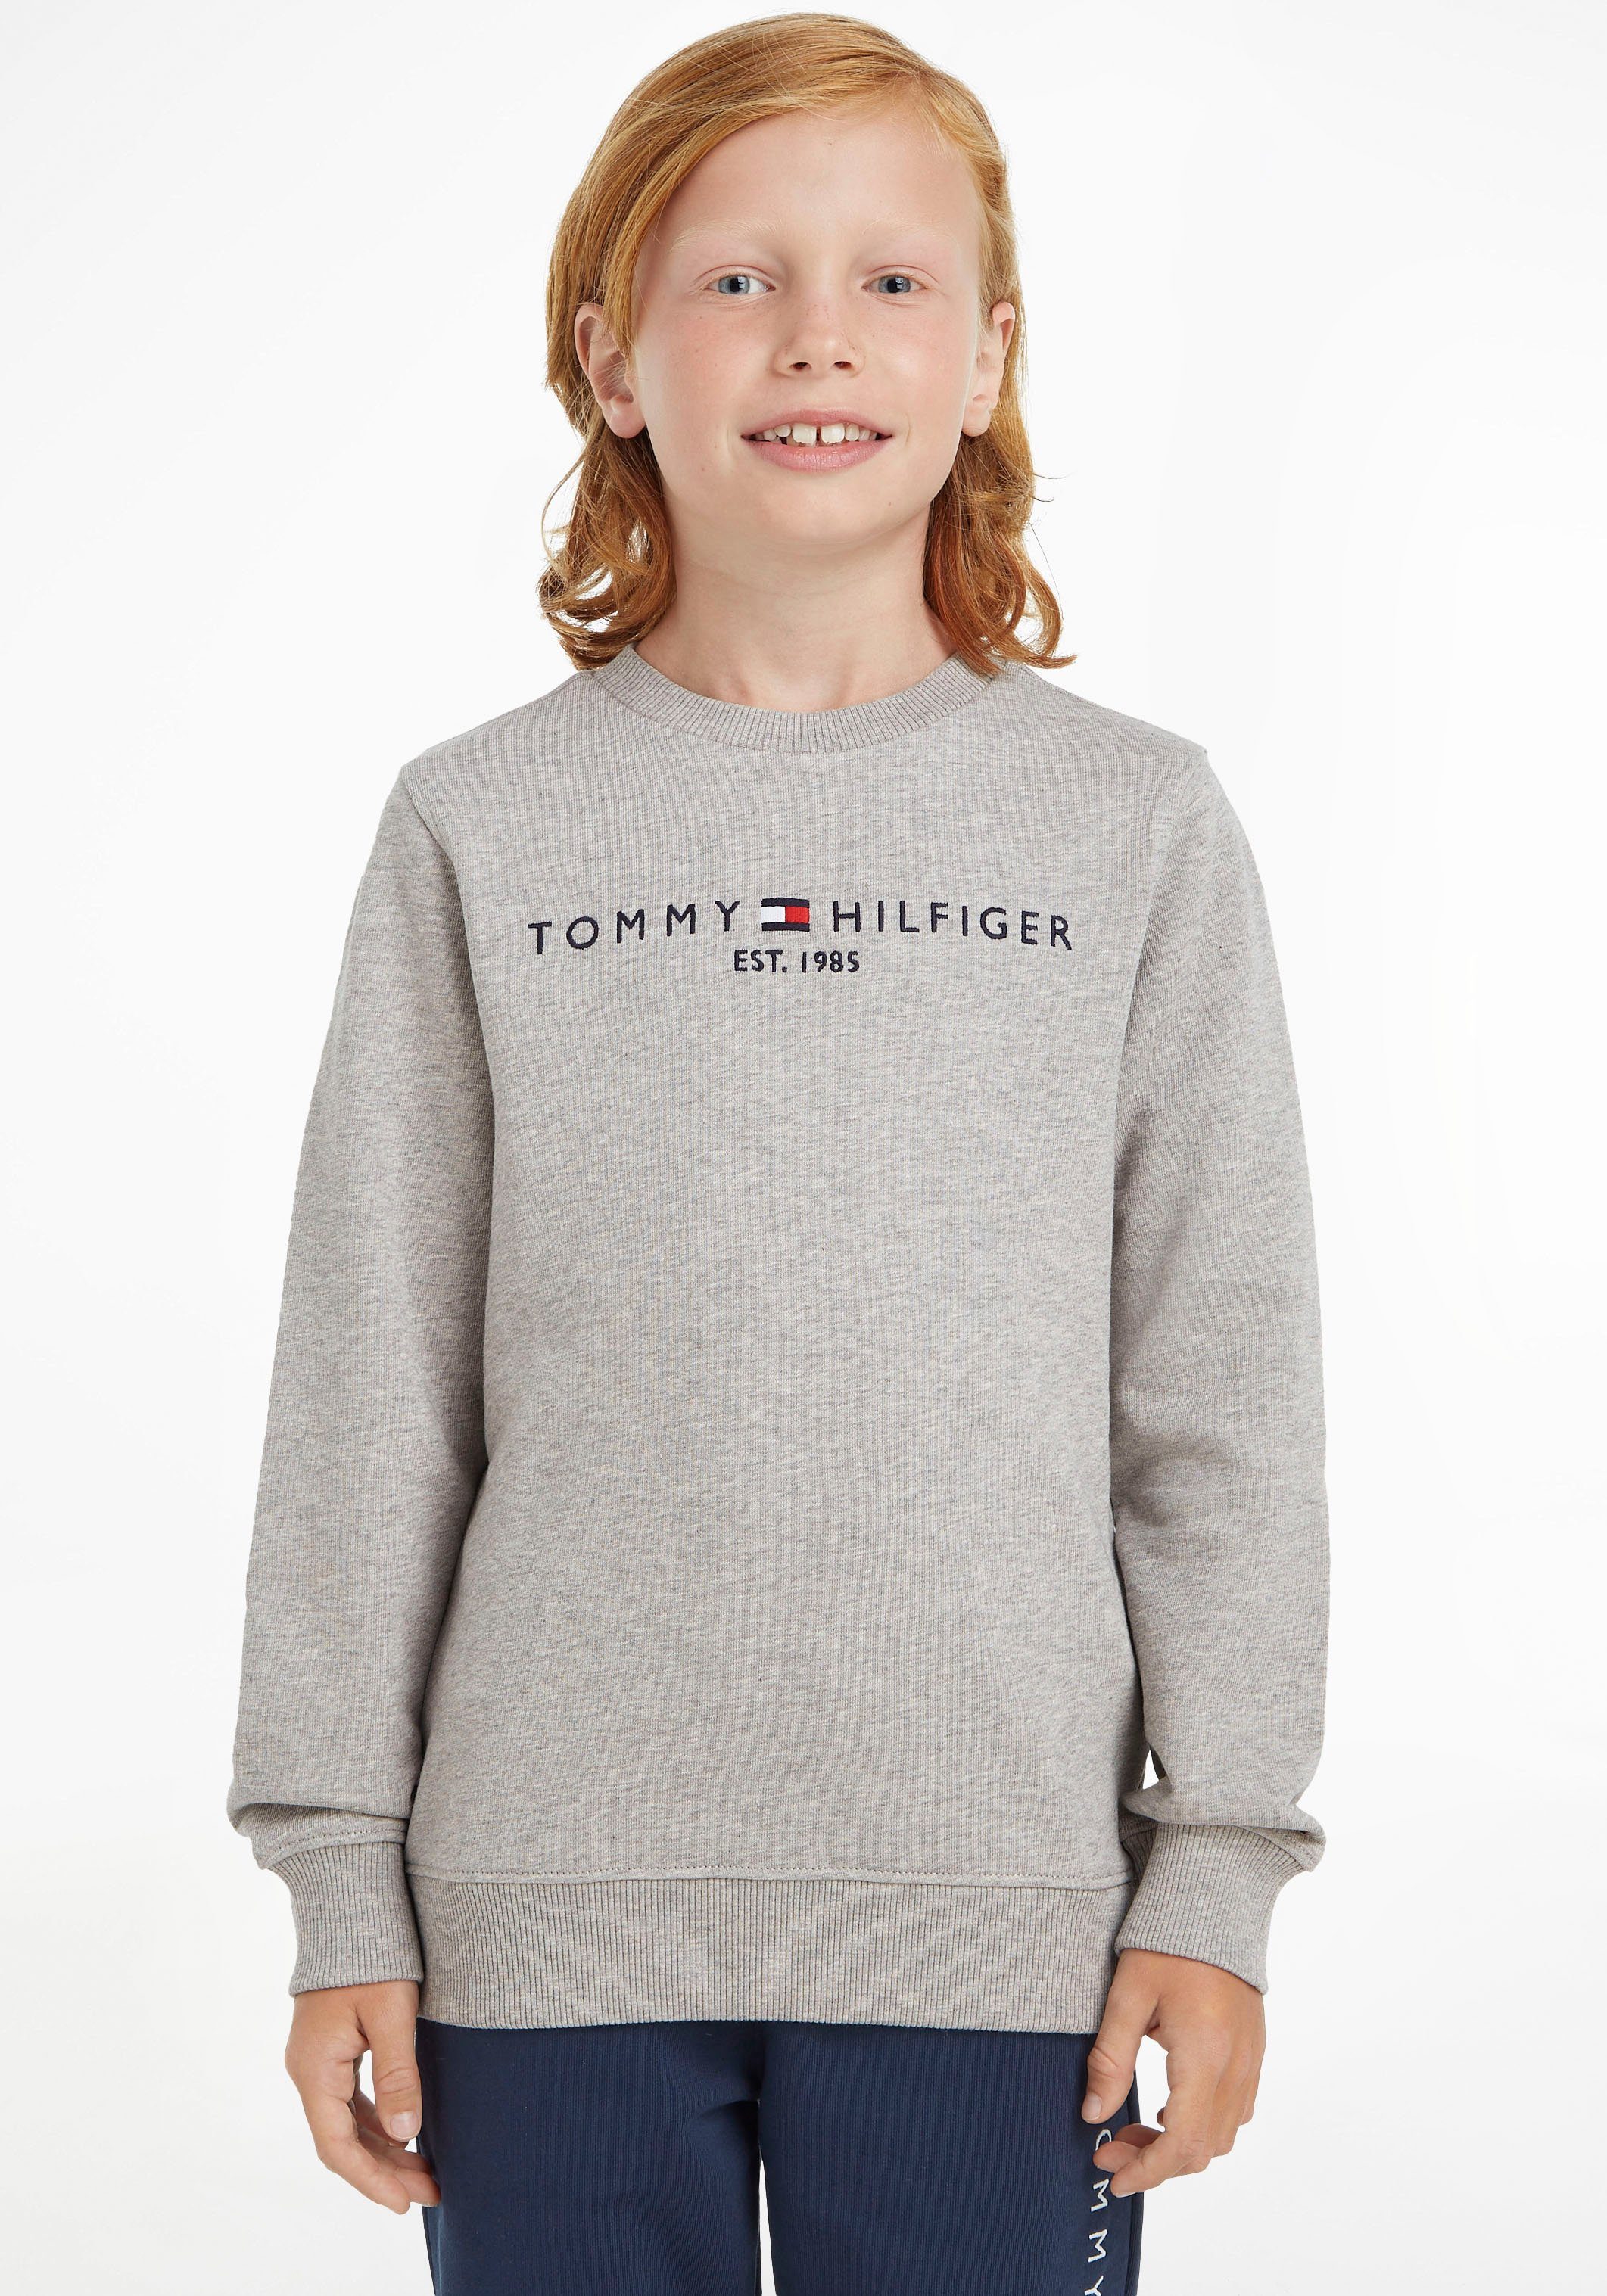 ESSENTIAL Jungen Sweatshirt Hilfiger Tommy MiniMe,für Kinder SWEATSHIRT Mädchen Junior Kids und